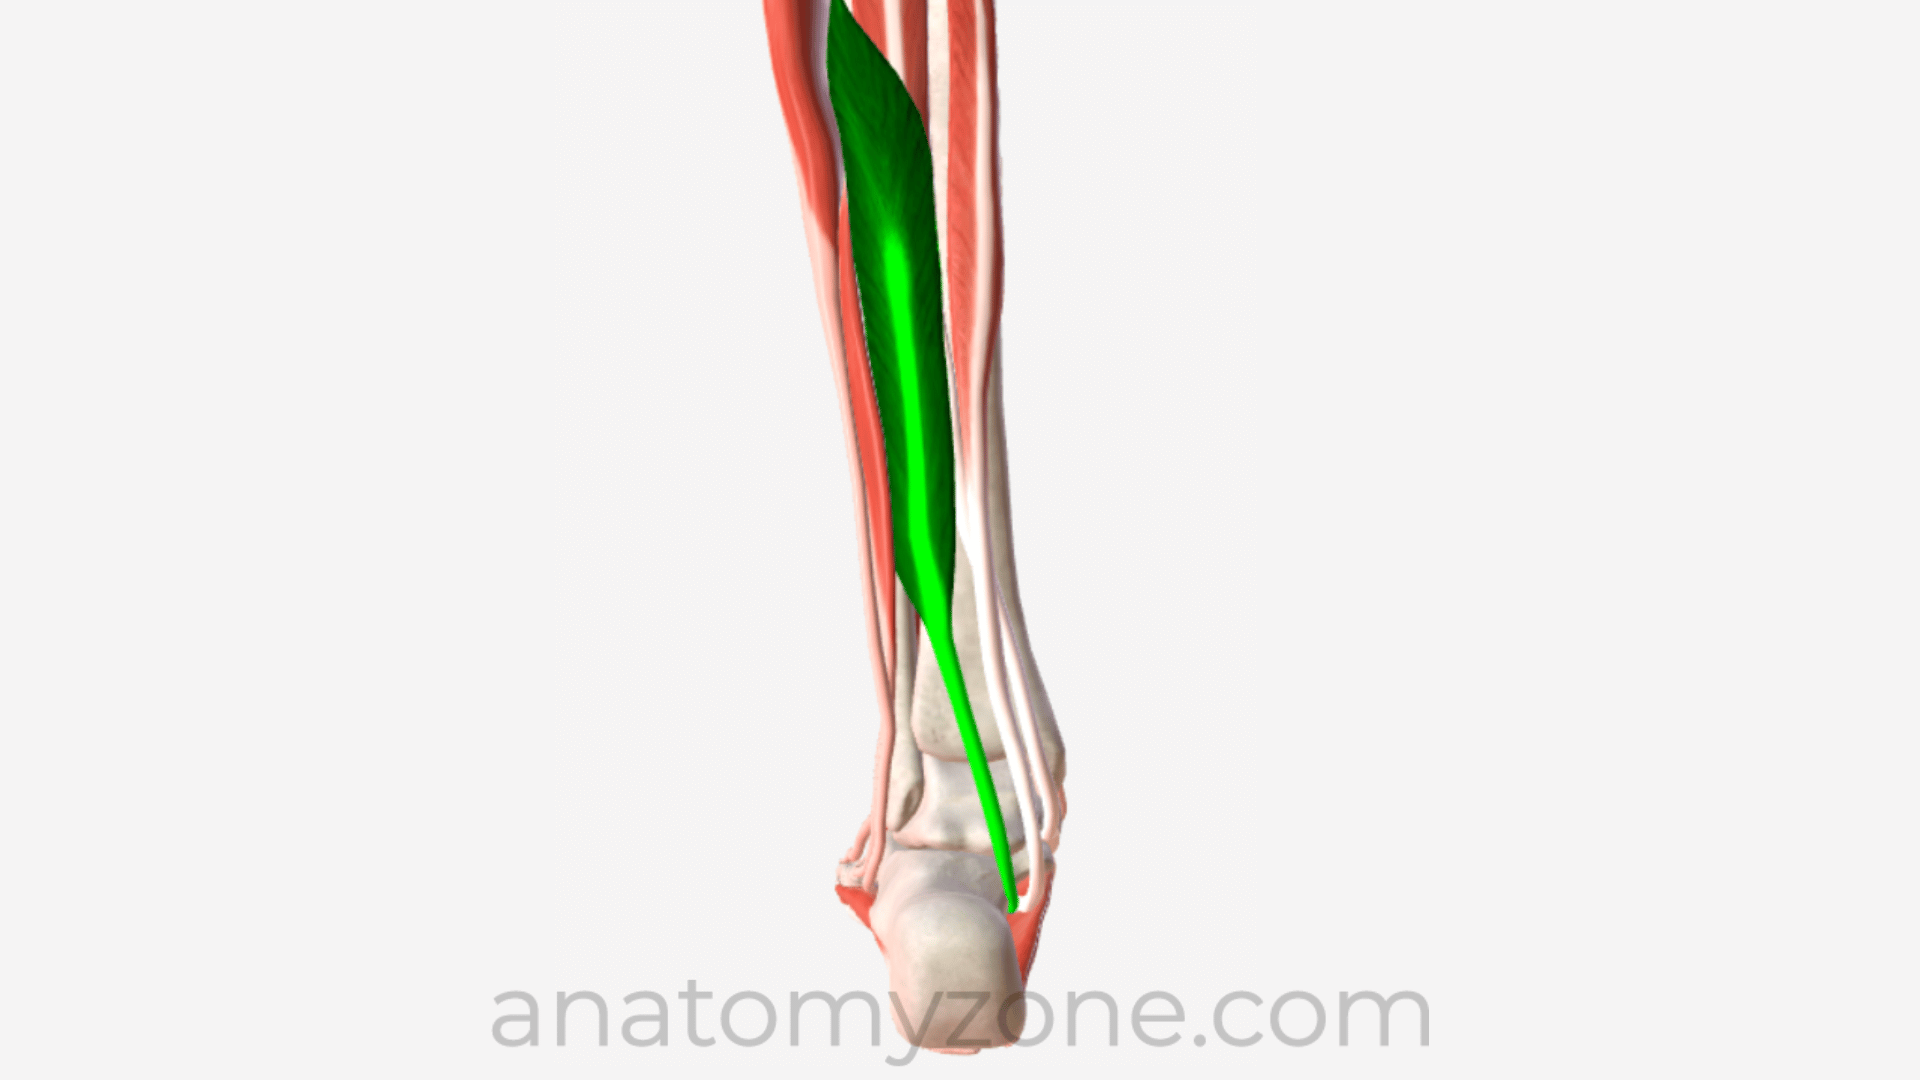 3D anatomy of the flexor hallucis longus muscle